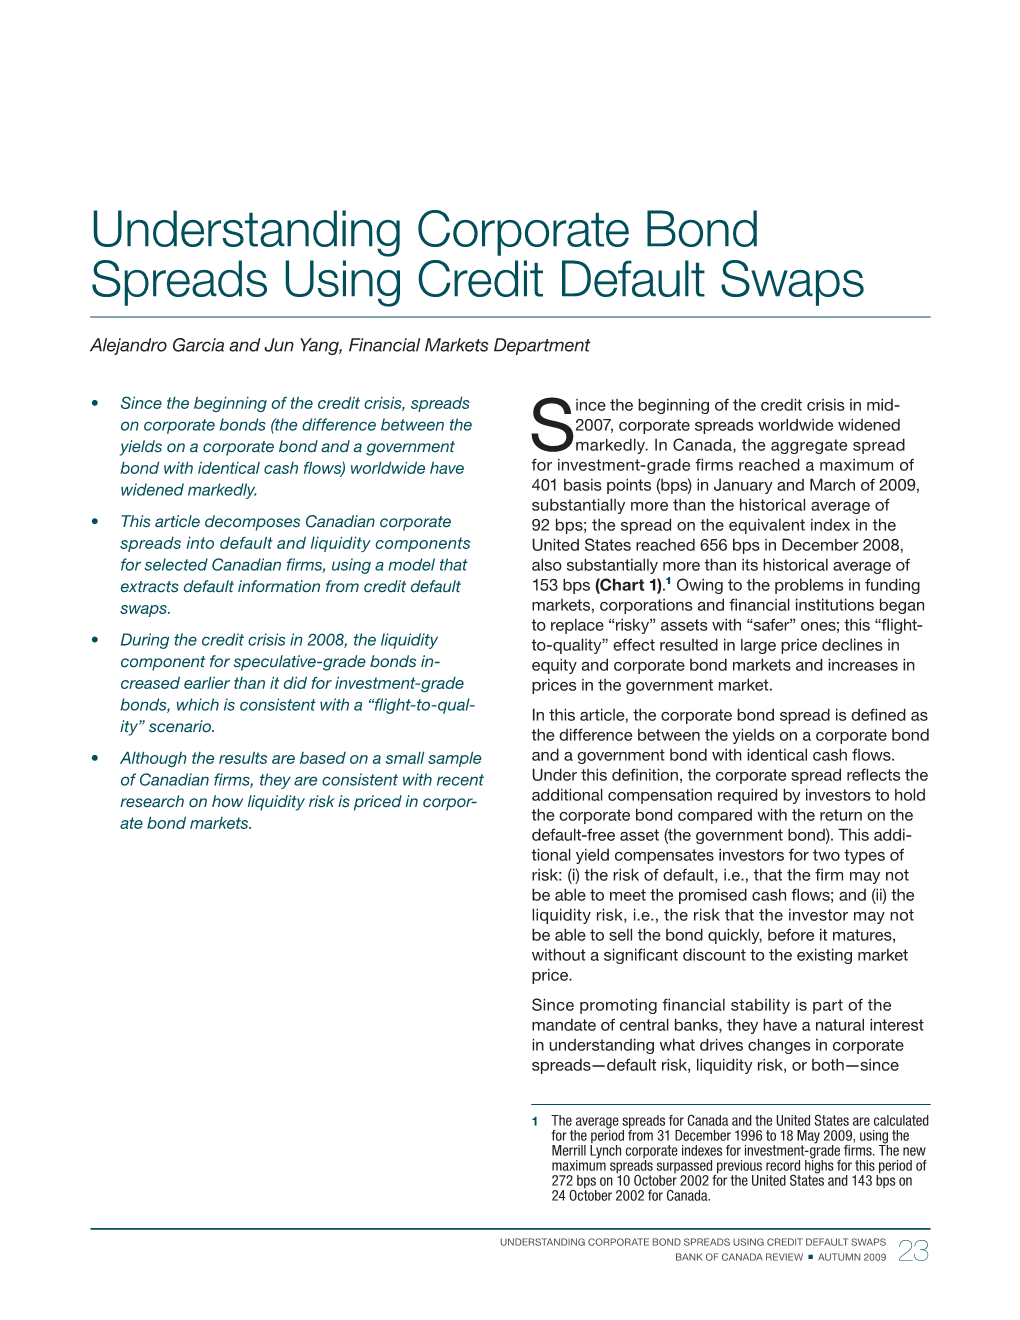 Understanding Corporate Bond Spreads Using Credit Default Swaps